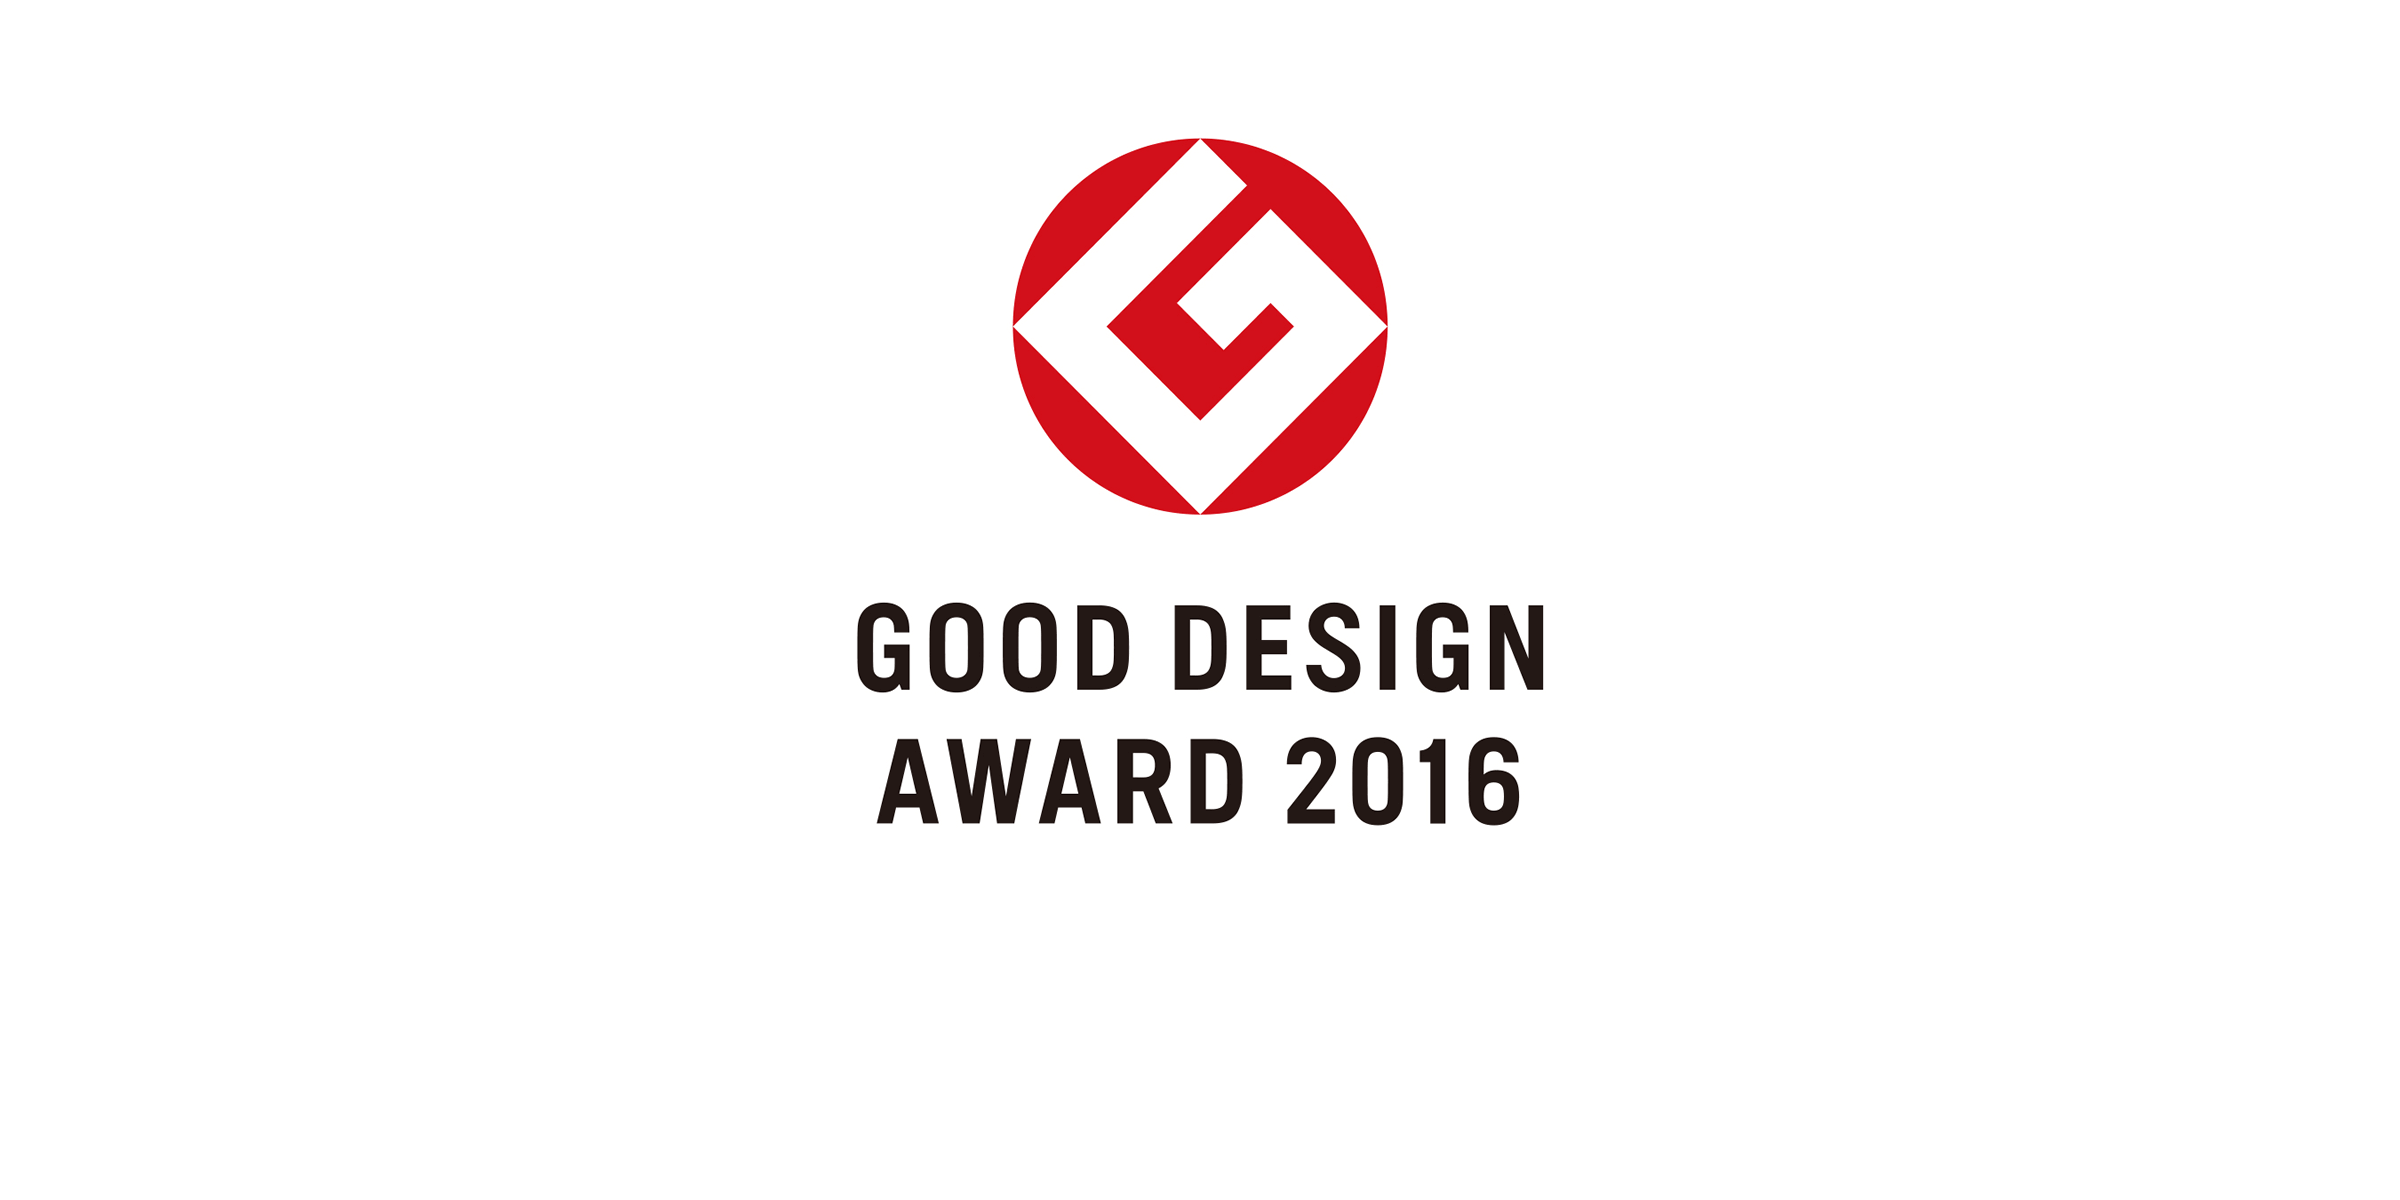 GOOD DESIGN AWARD 2016